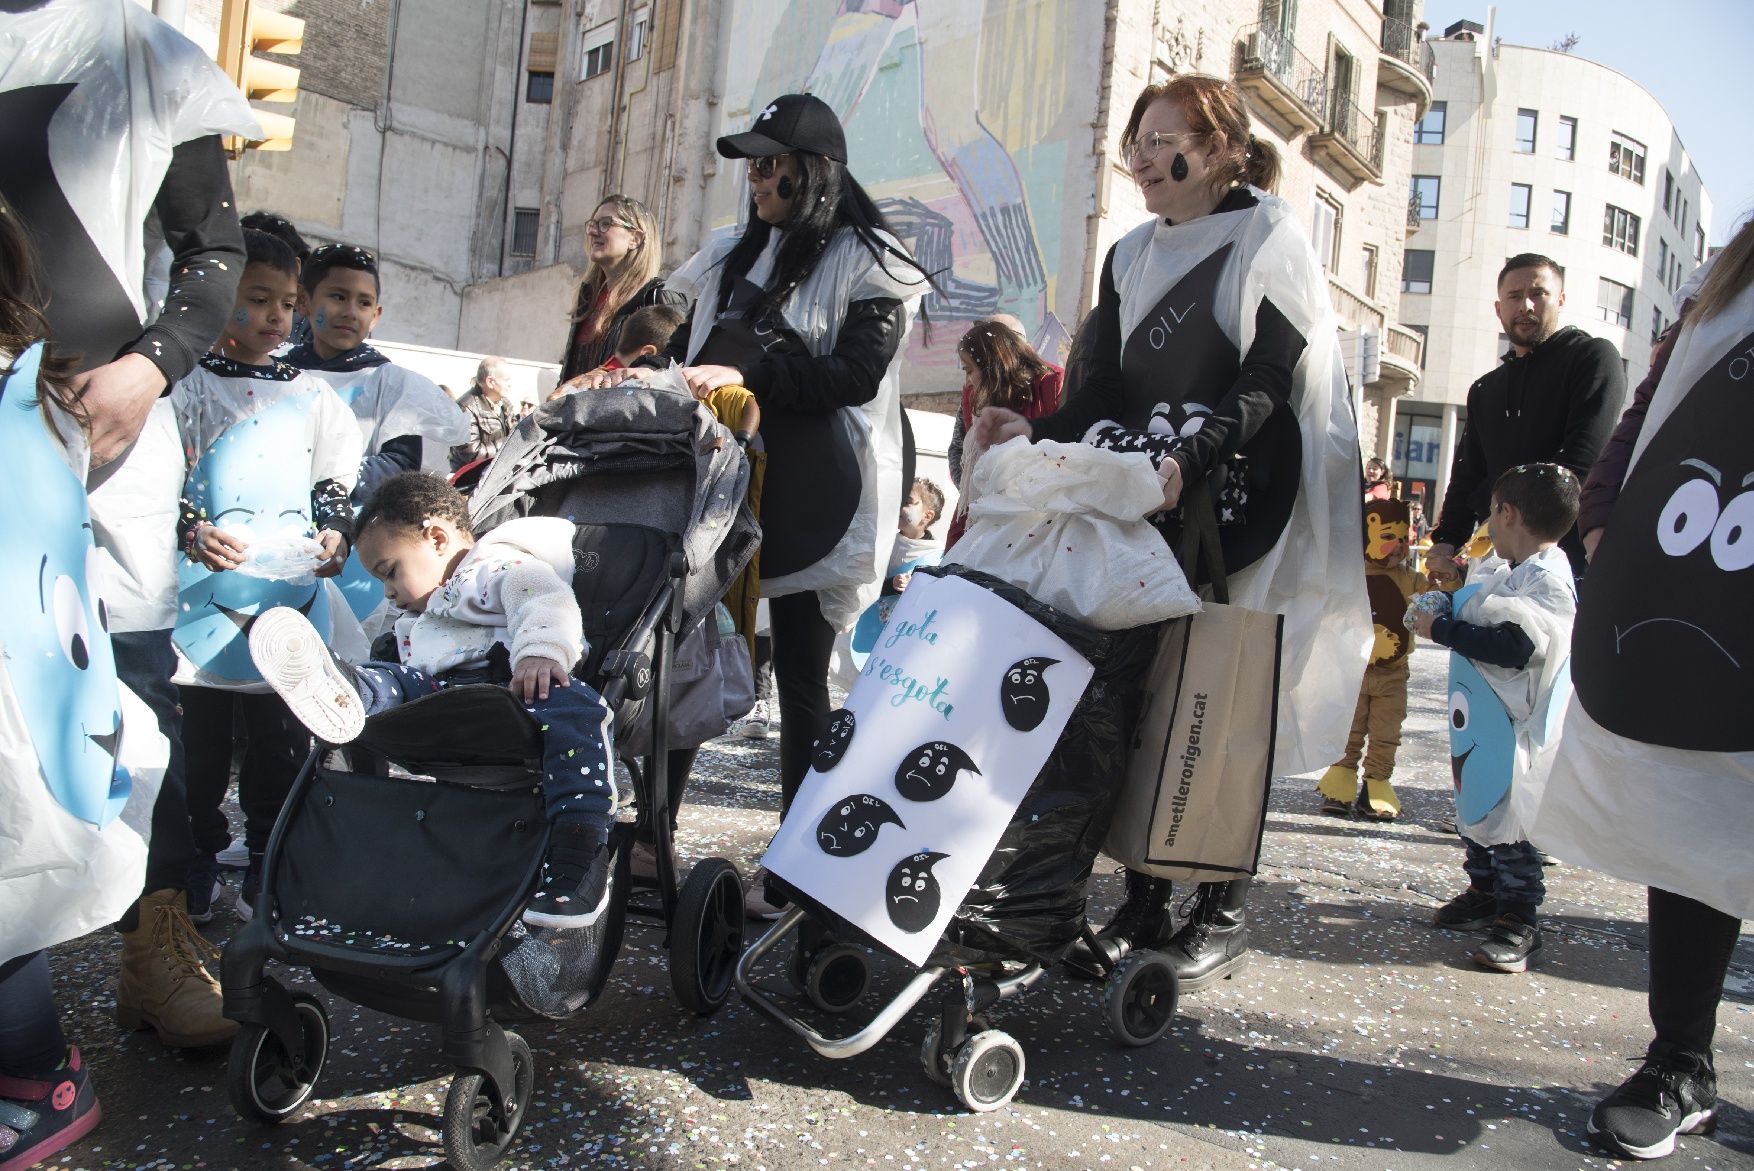 El Carnaval de Manresa recupera la seva màxima esplendor amb una marea d’infants